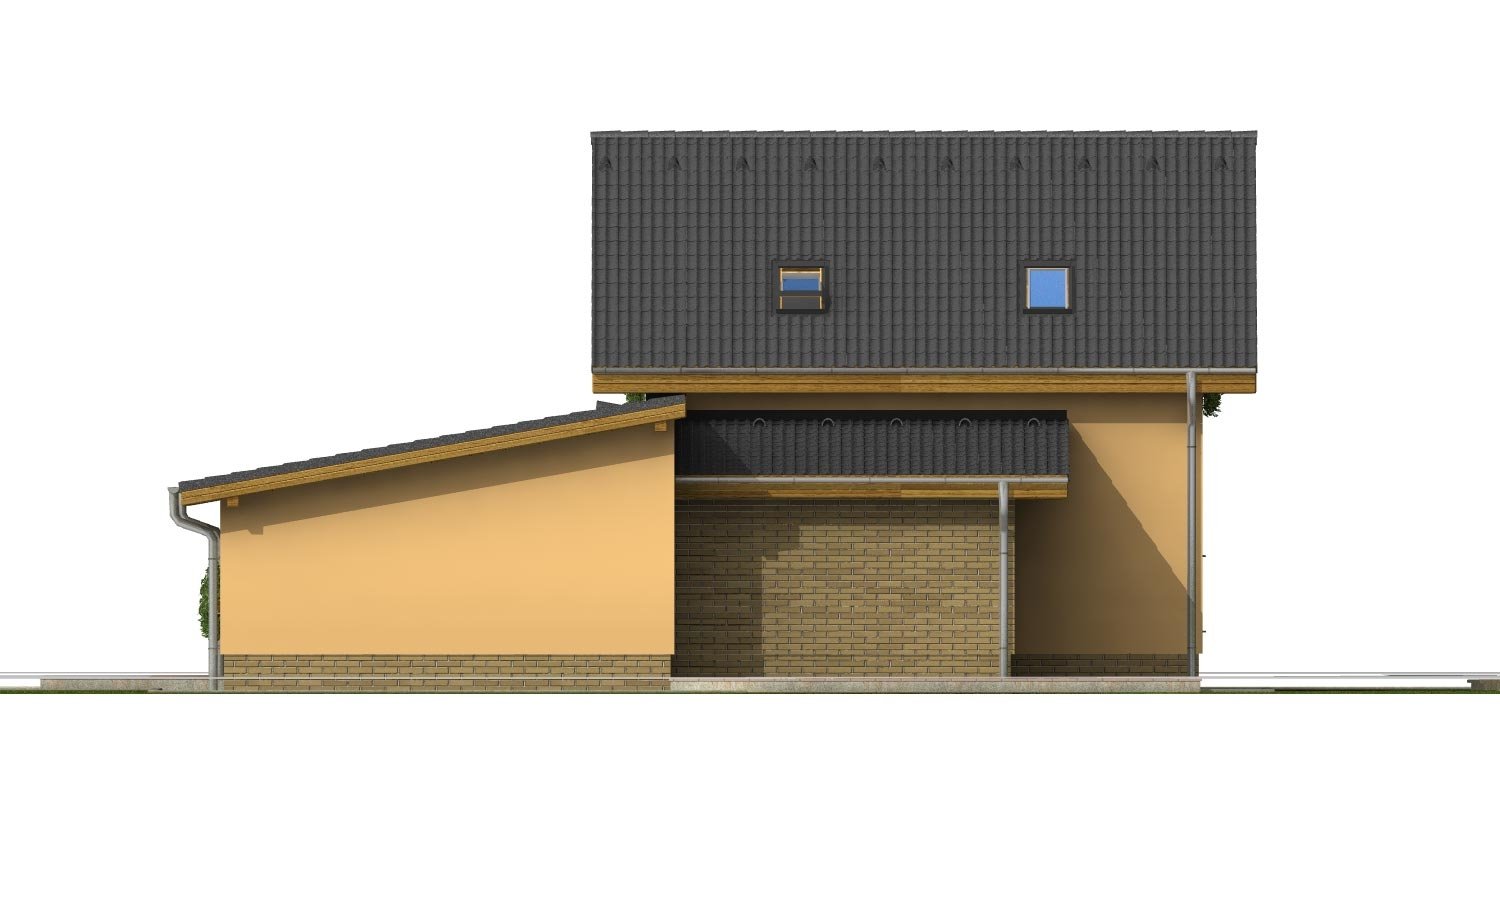 Pohľad 3. - Souhra pultové a sedlové střechy. Možnost změny vstupu do garáže.